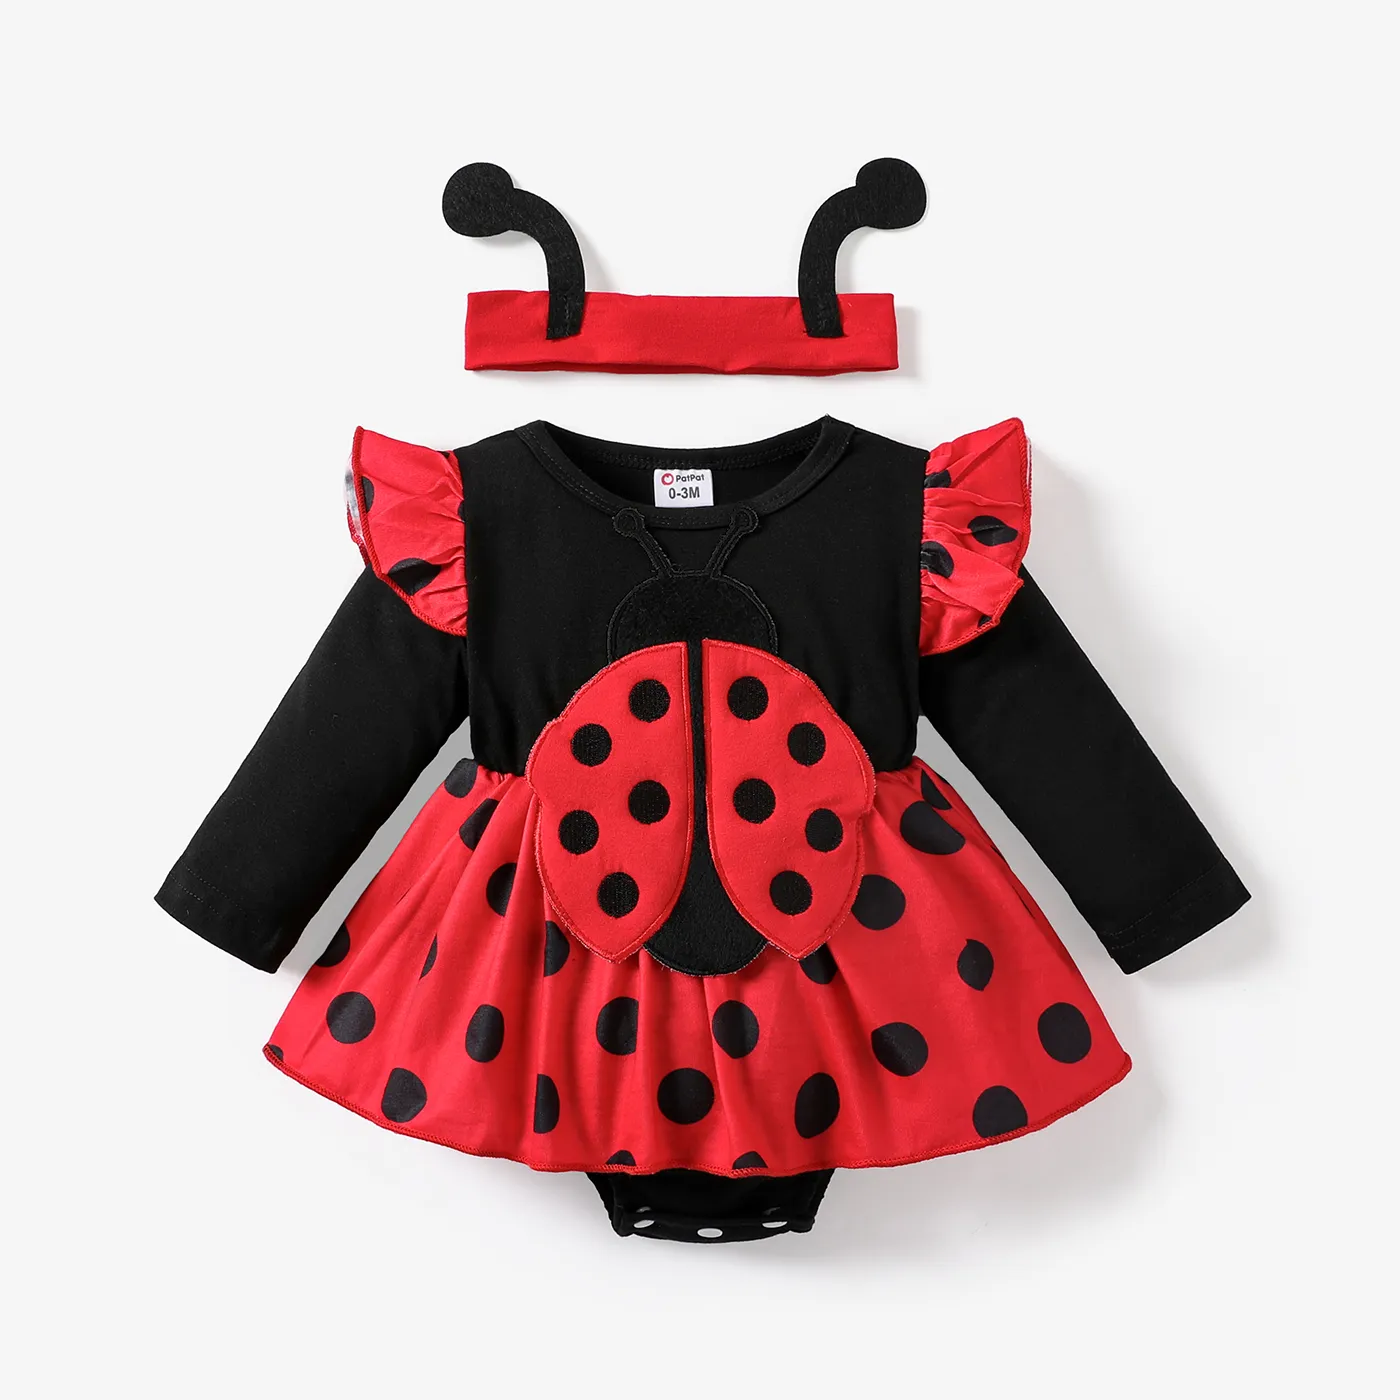 2pcs Baby Girls Childlike Polka Dot Ladybug Romper Set